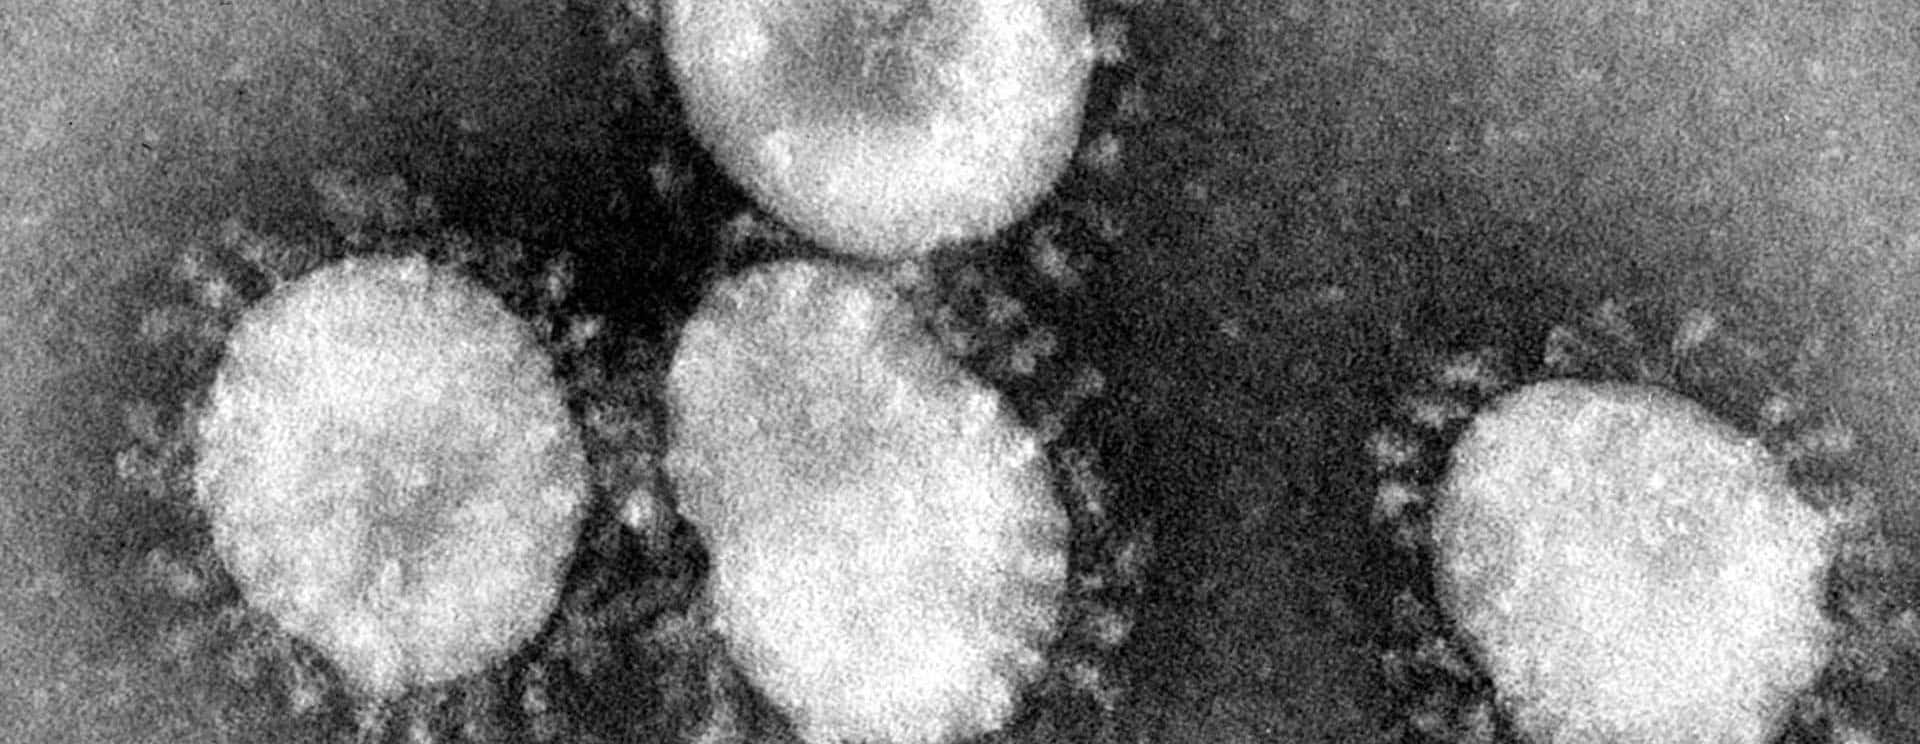 coronaviruses-jpg-15